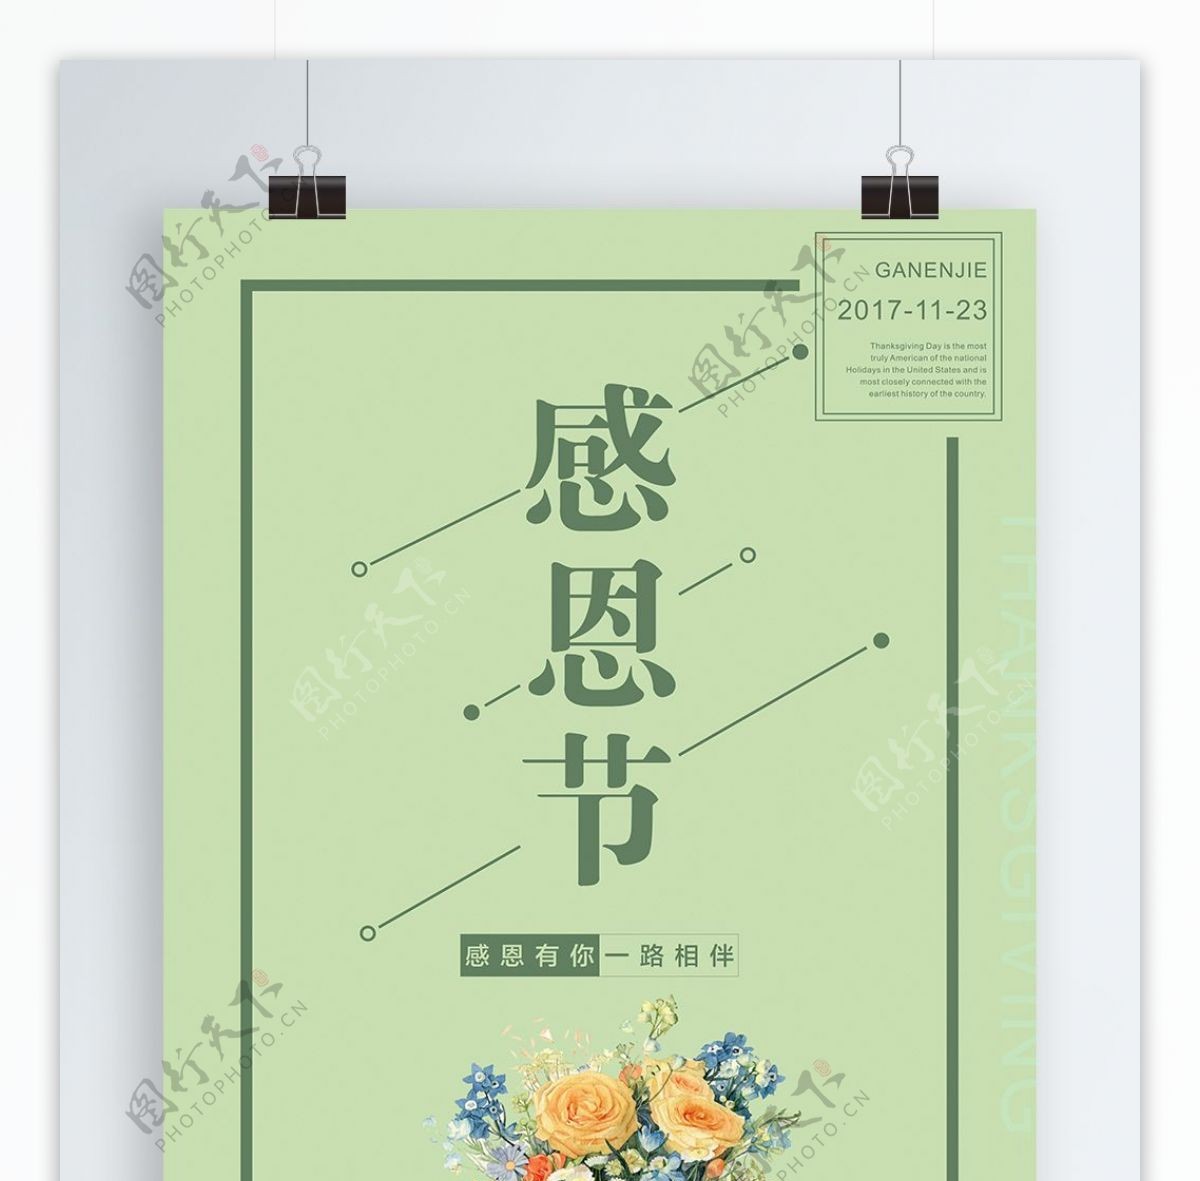 绿色小清新感恩节节日海报设计